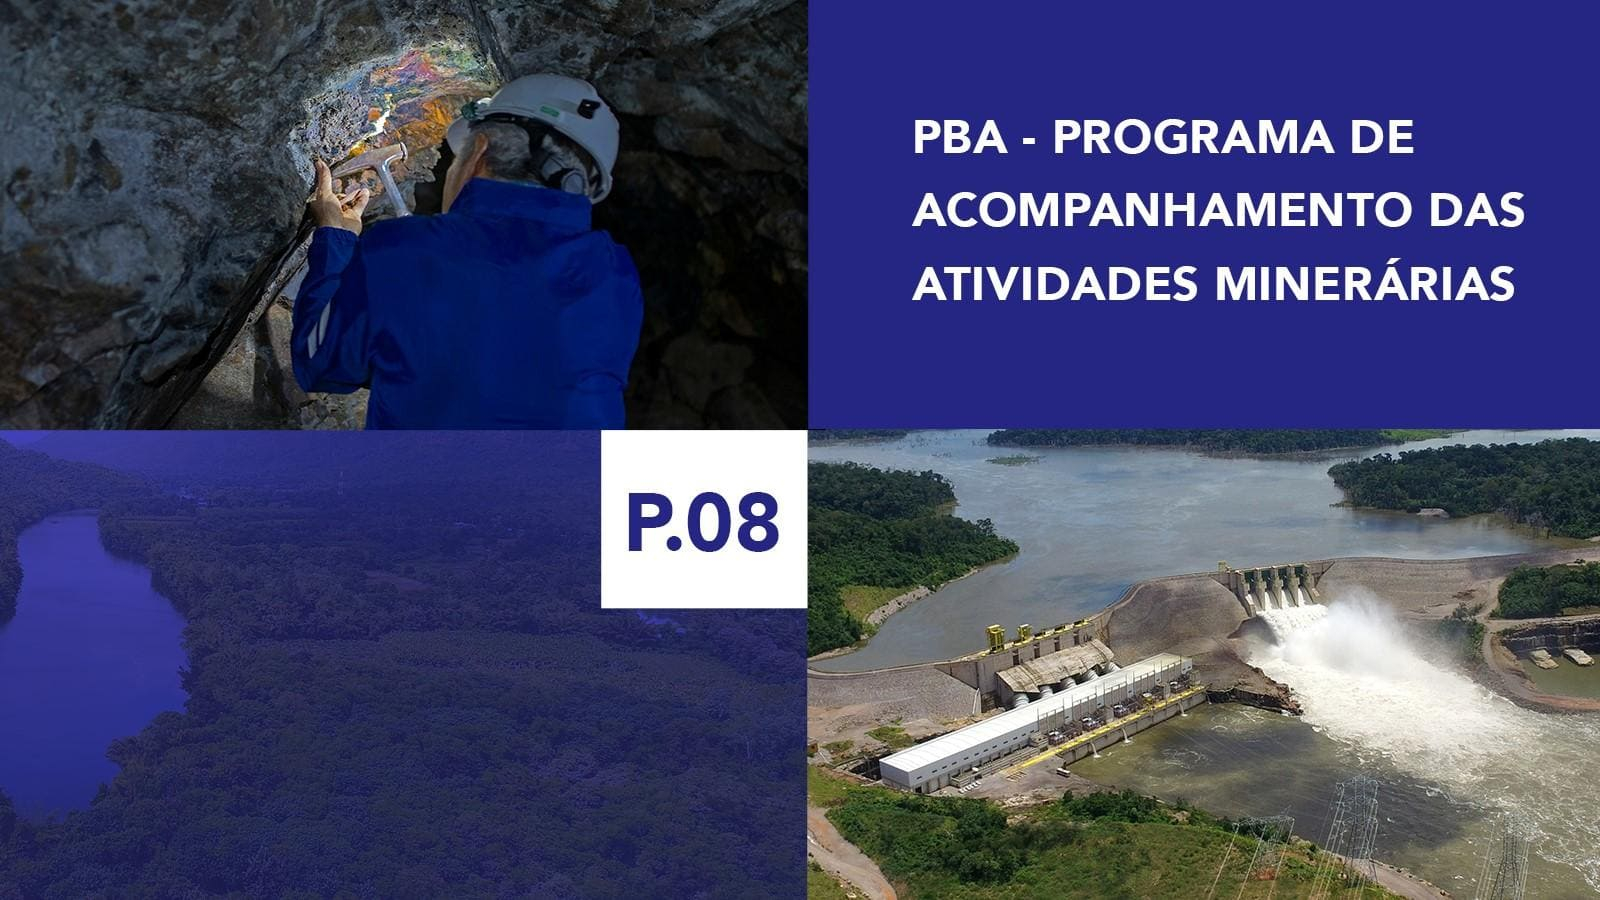 P.08 - Programa de Acompanhamento das atividades minerárias